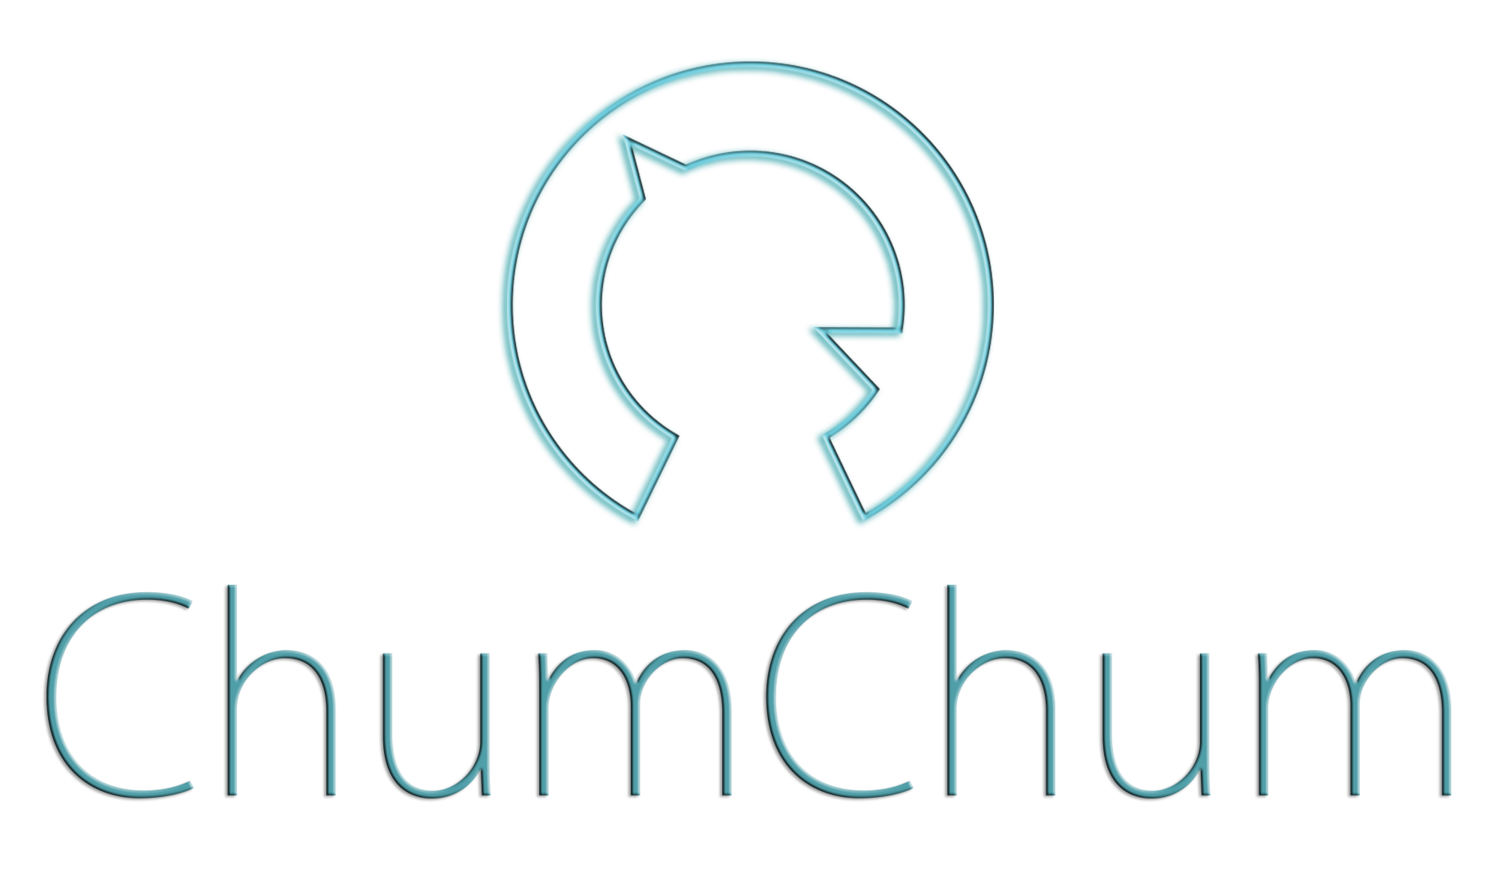 Chumchum